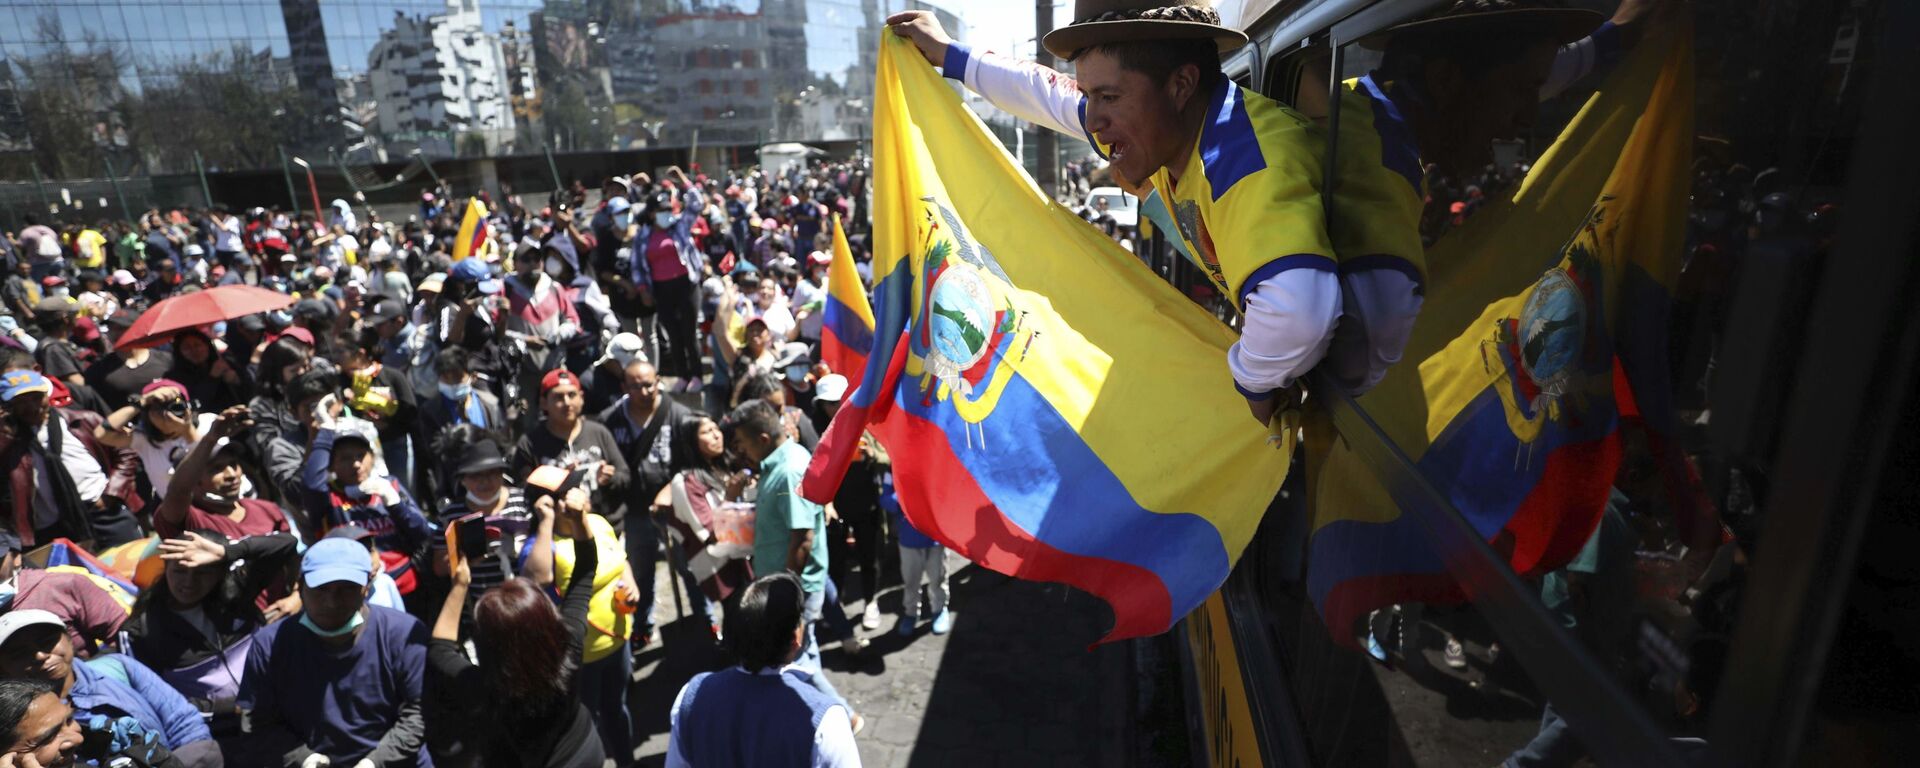 Indígenas ecuatorianos protestas durante la crisis política de octubre de 2019 en Ecuador - Sputnik Mundo, 1920, 28.06.2022